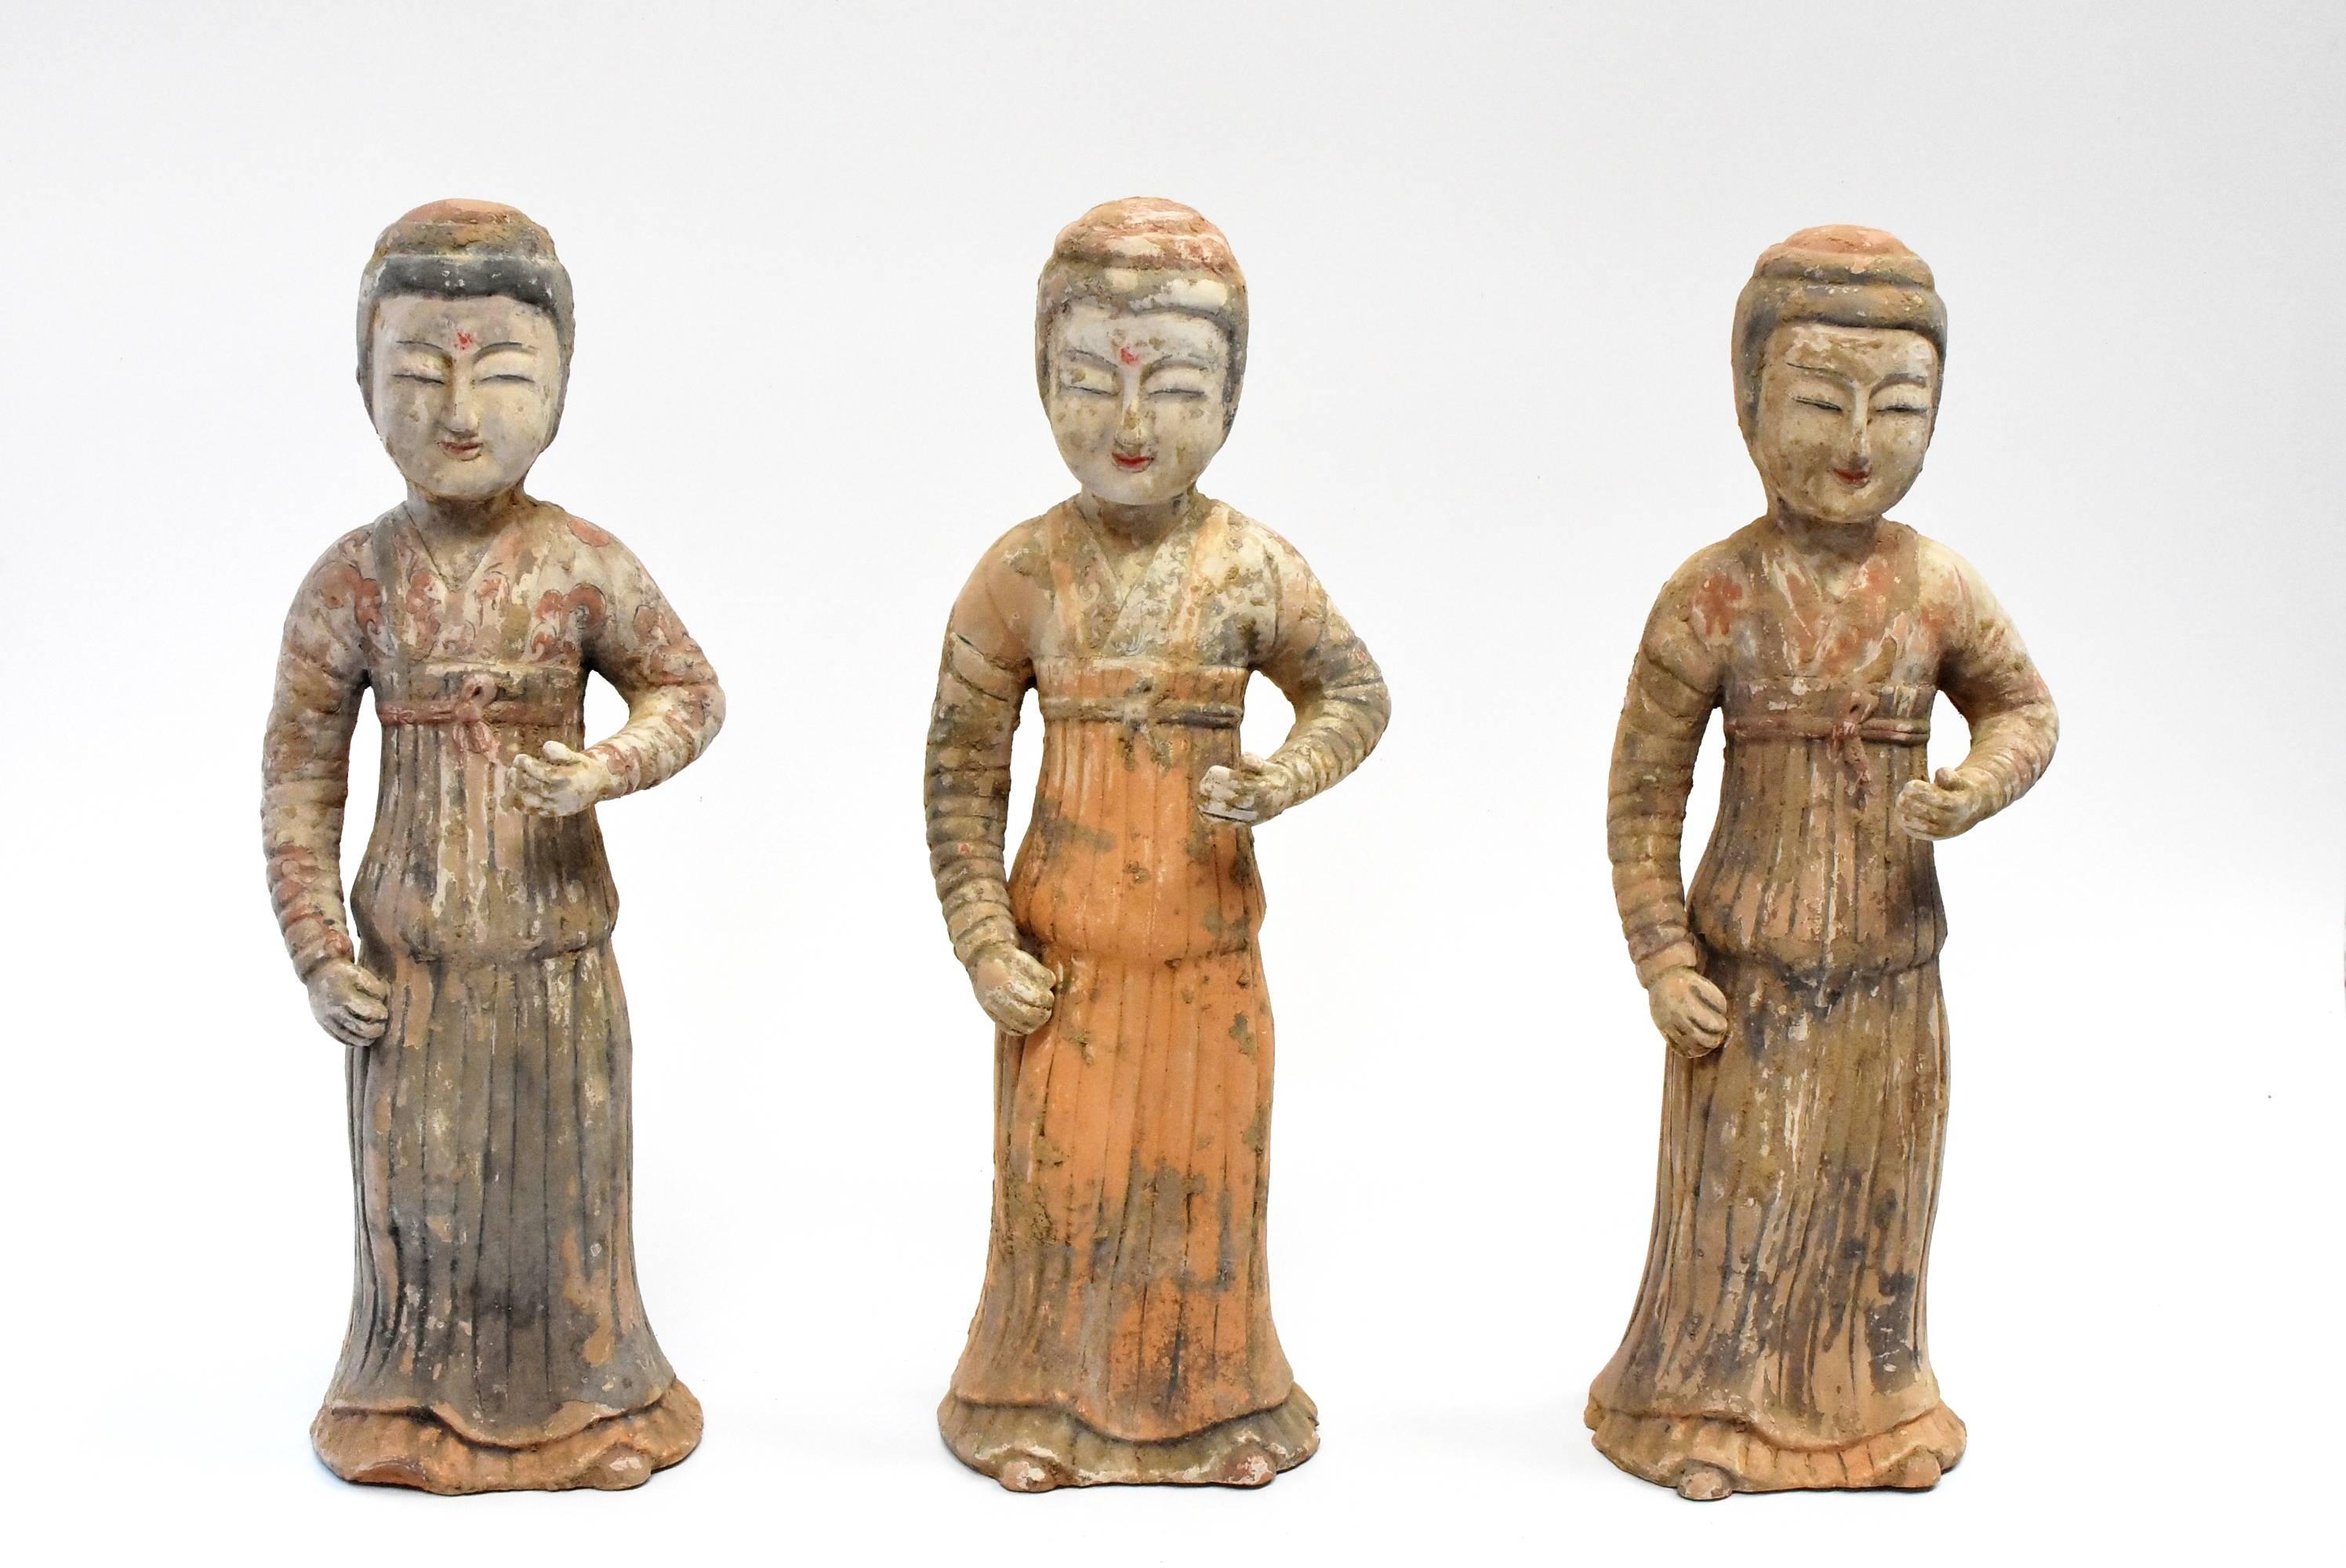 Eine Reihe von schönen Terrakotta-Hofdamen im Stil der Han-Dynastie. Es gibt Gouvernanten, deren Aufgabe es ist, den Damen des Hauses Manieren und Etikette beizubringen und den Mägden und Dienern den richtigen Umgang mit den Gästen. Sie tragen ein